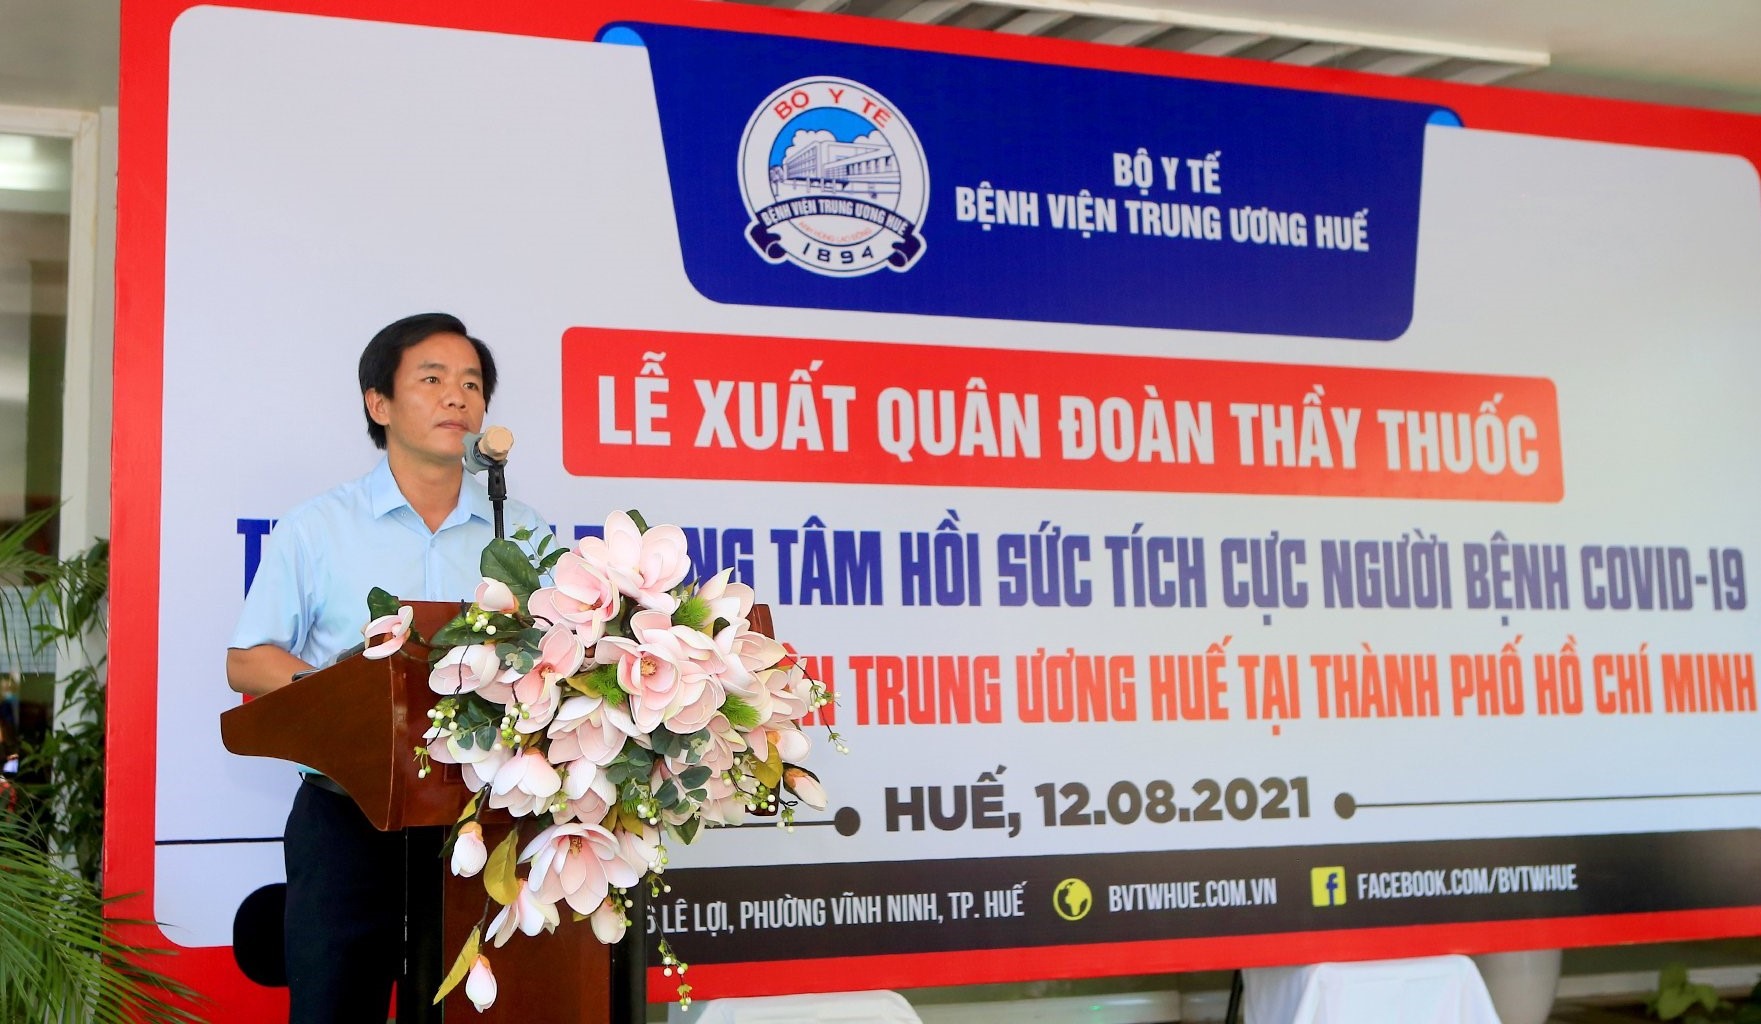 ông Nguyễn Văn Phương - Chủ tịch UBND tỉnh Thừa Thiên - Huế phát biểu tại buổi lễ.